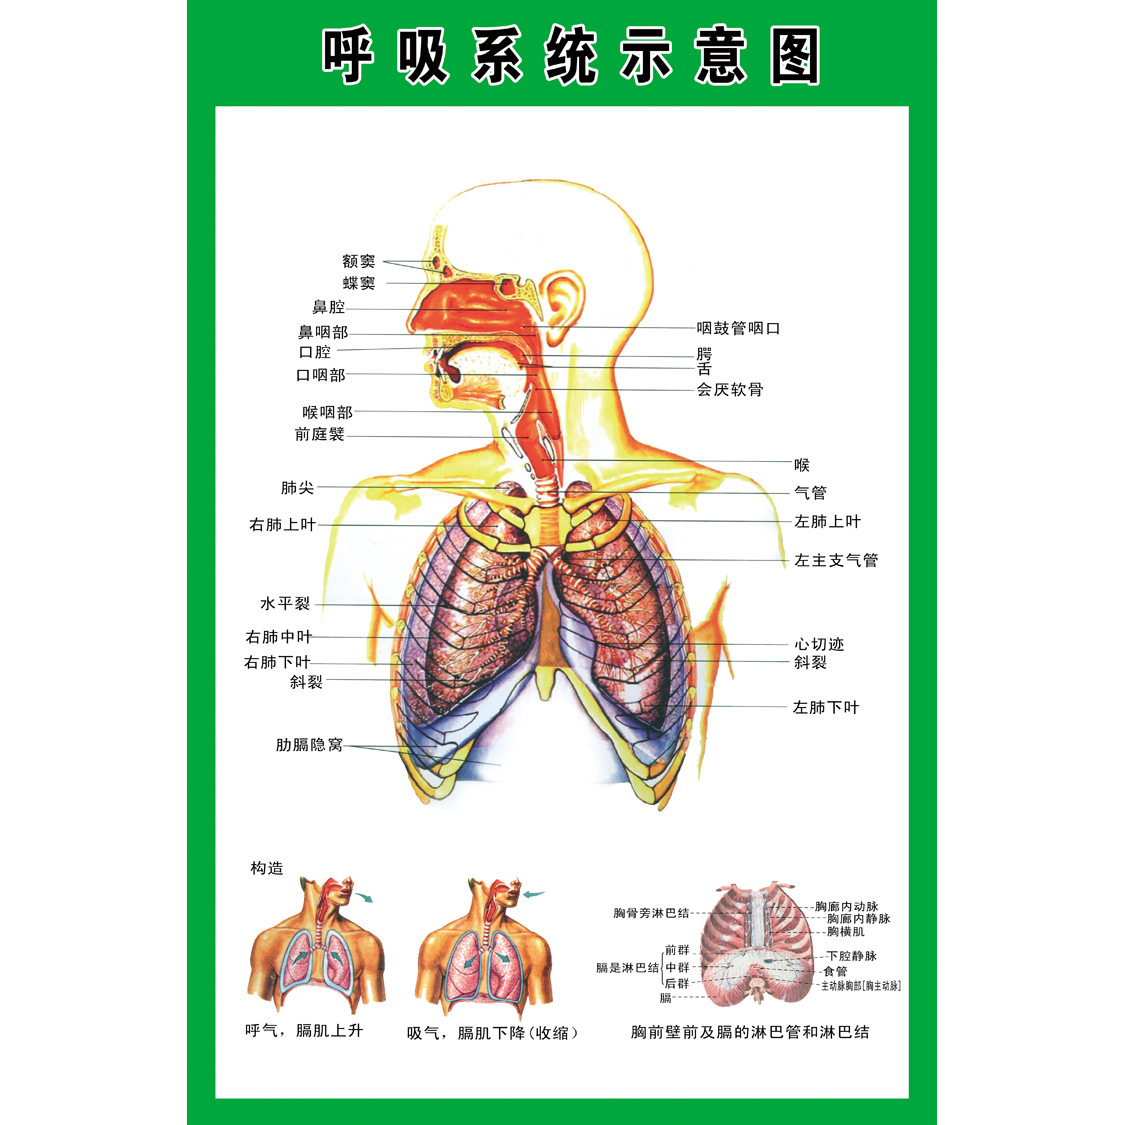 人体系统解剖图 呼吸血管系统示意图 医院器官解剖知识挂图海报